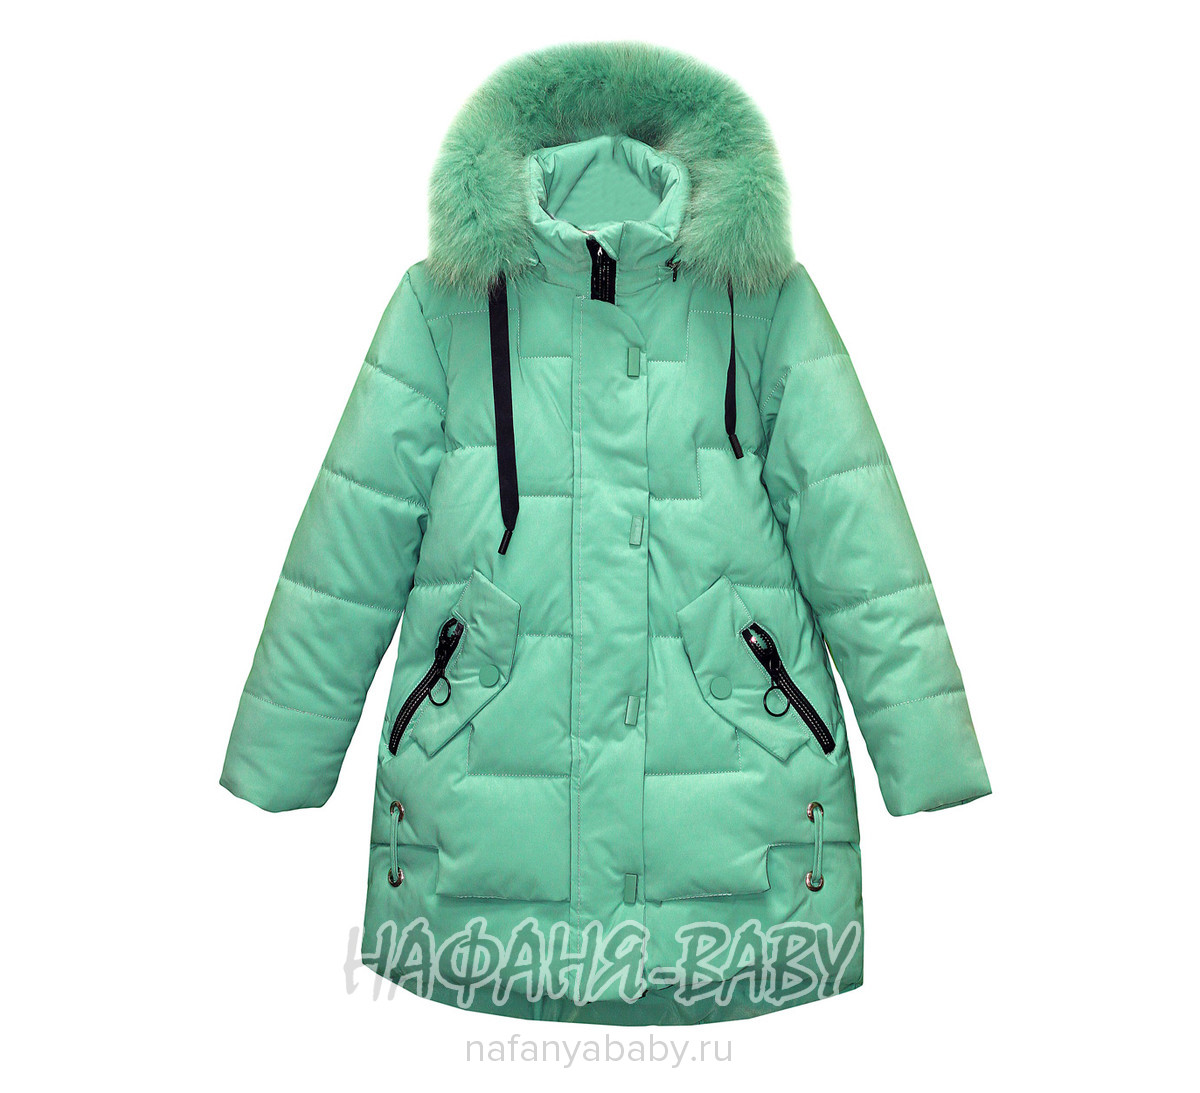 Удлиненная зимняя куртка для девочки YIKAI арт: 1842, 10-15 лет, 5-9 лет, оптом Китай (Пекин)